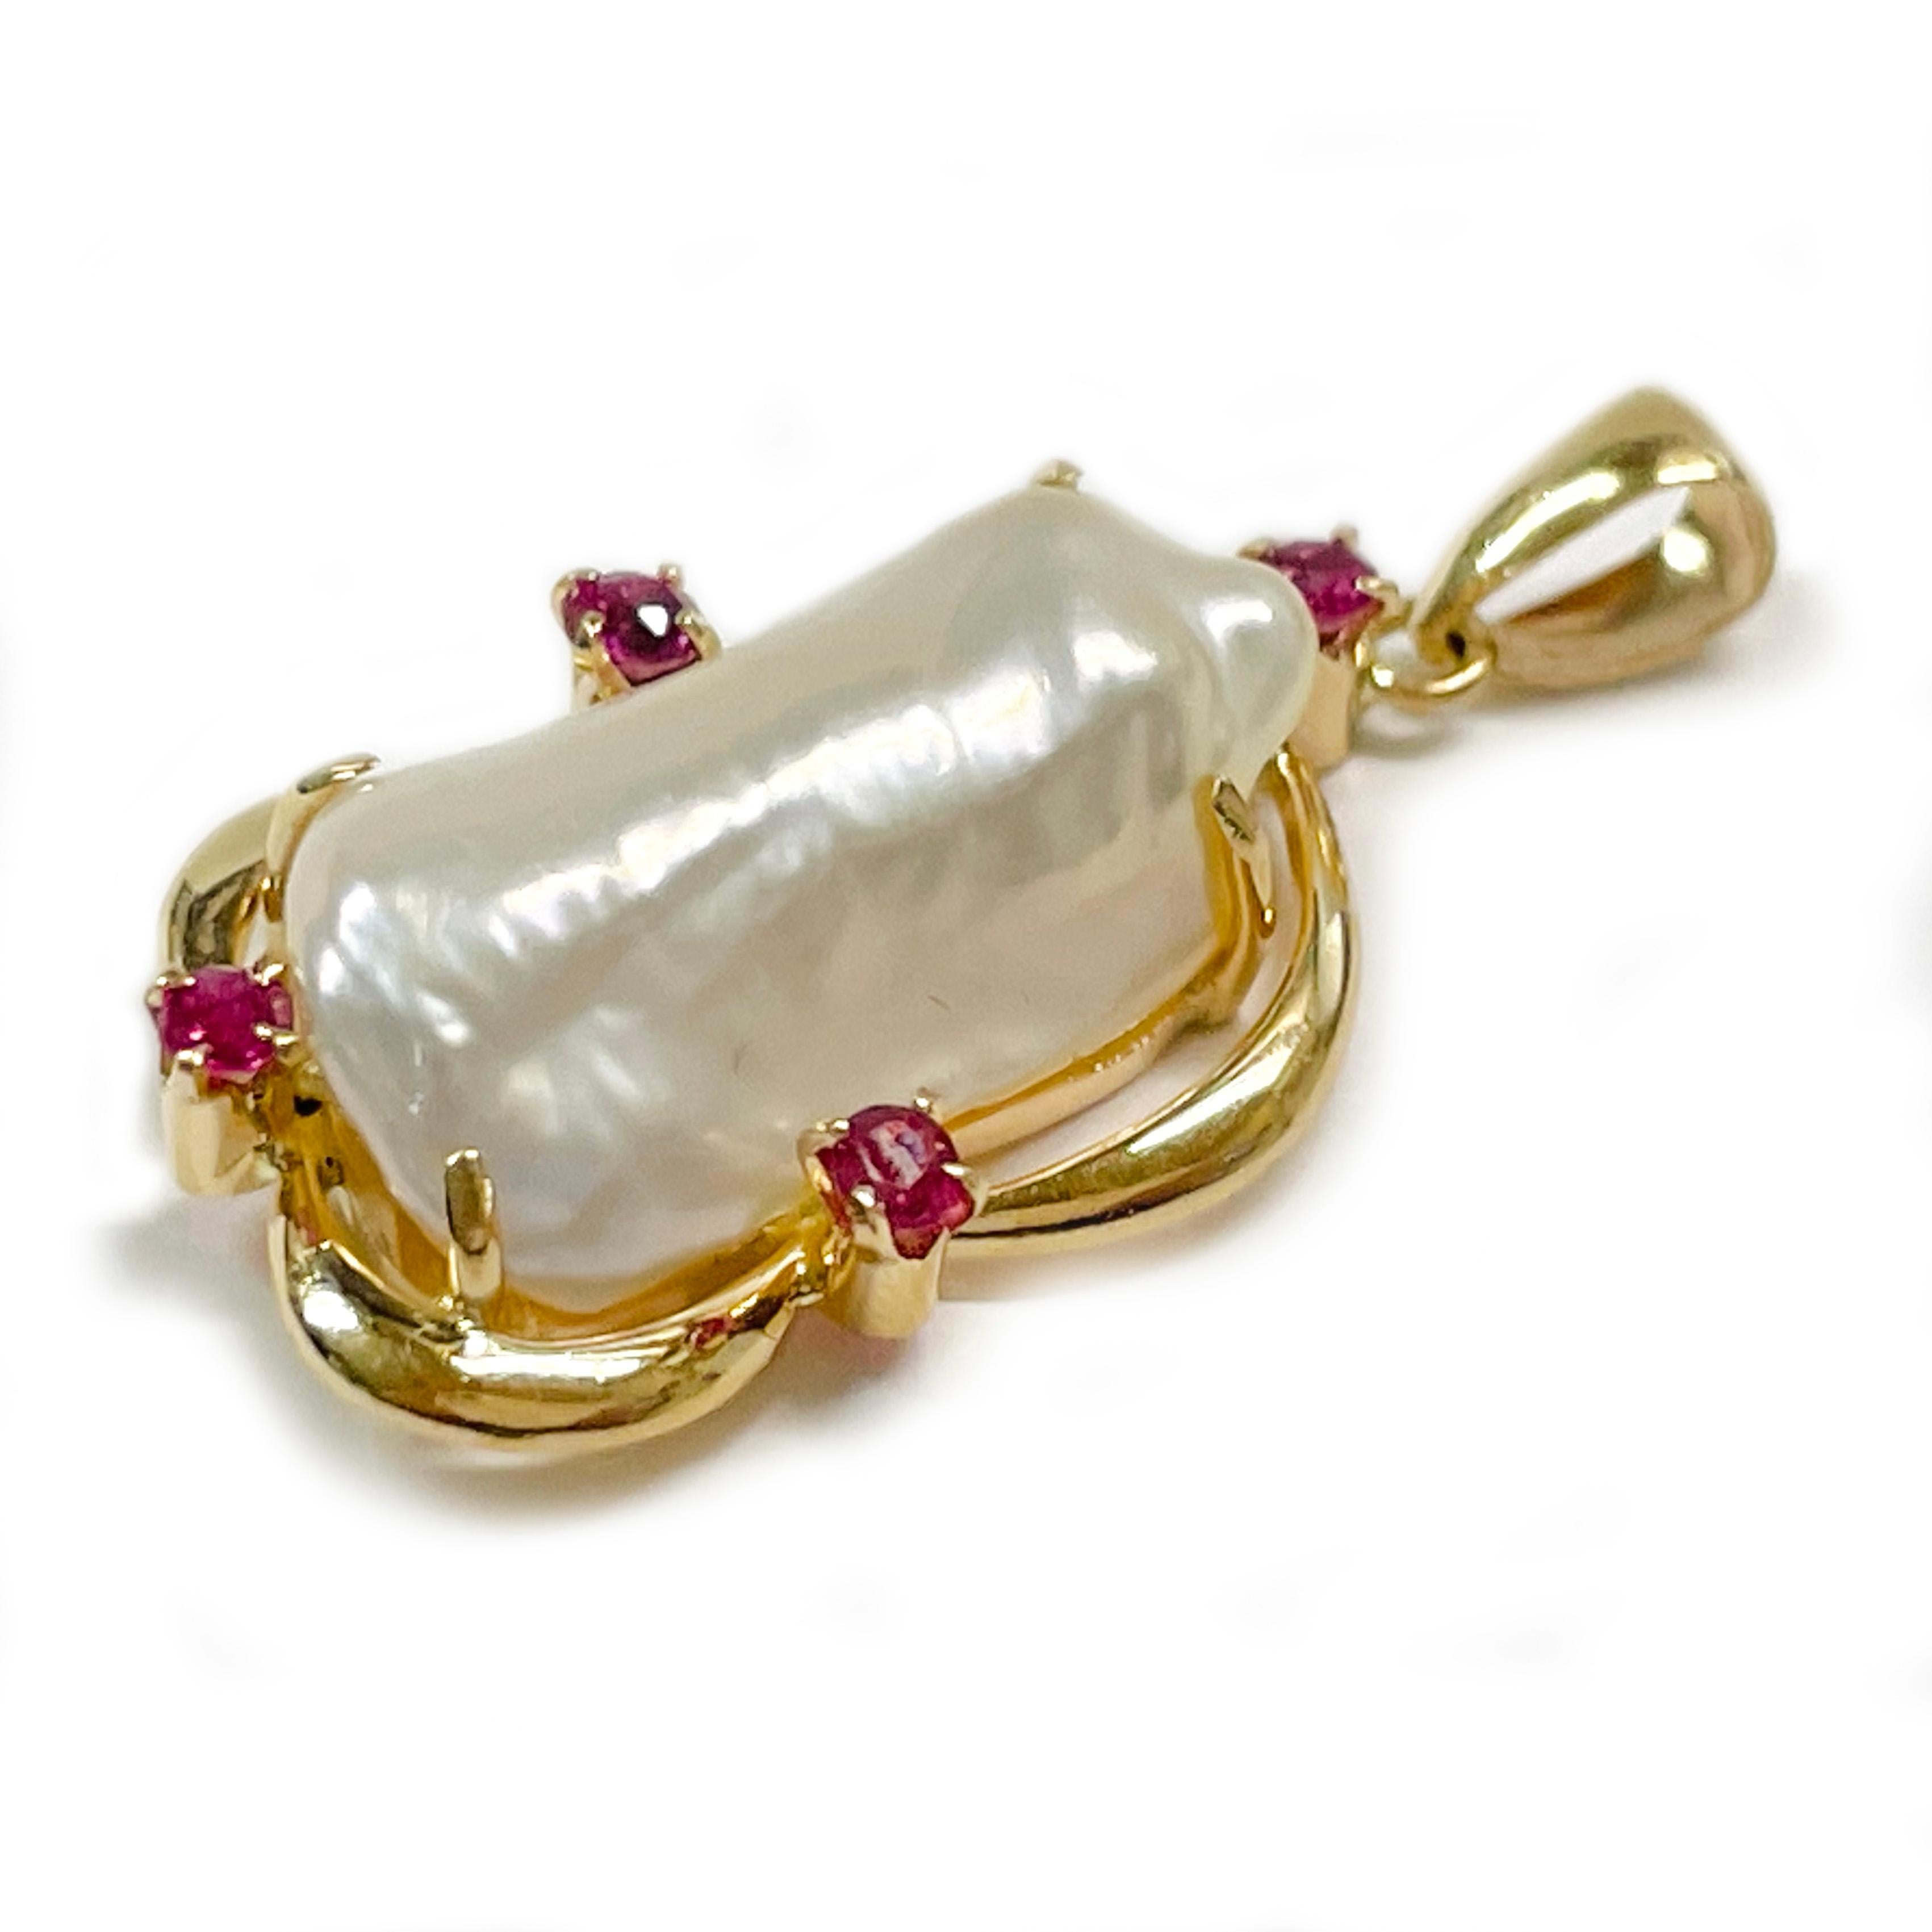 Pendentif en or jaune 14 carats, perle baroque et rubis. Le pendentif présente une eau douce baroque blanche sertie sur un chaton ouvert avec quatre rubis ronds sertis. La perle présente un bon lustre et de légères nuances de rose et de bleu/vert.